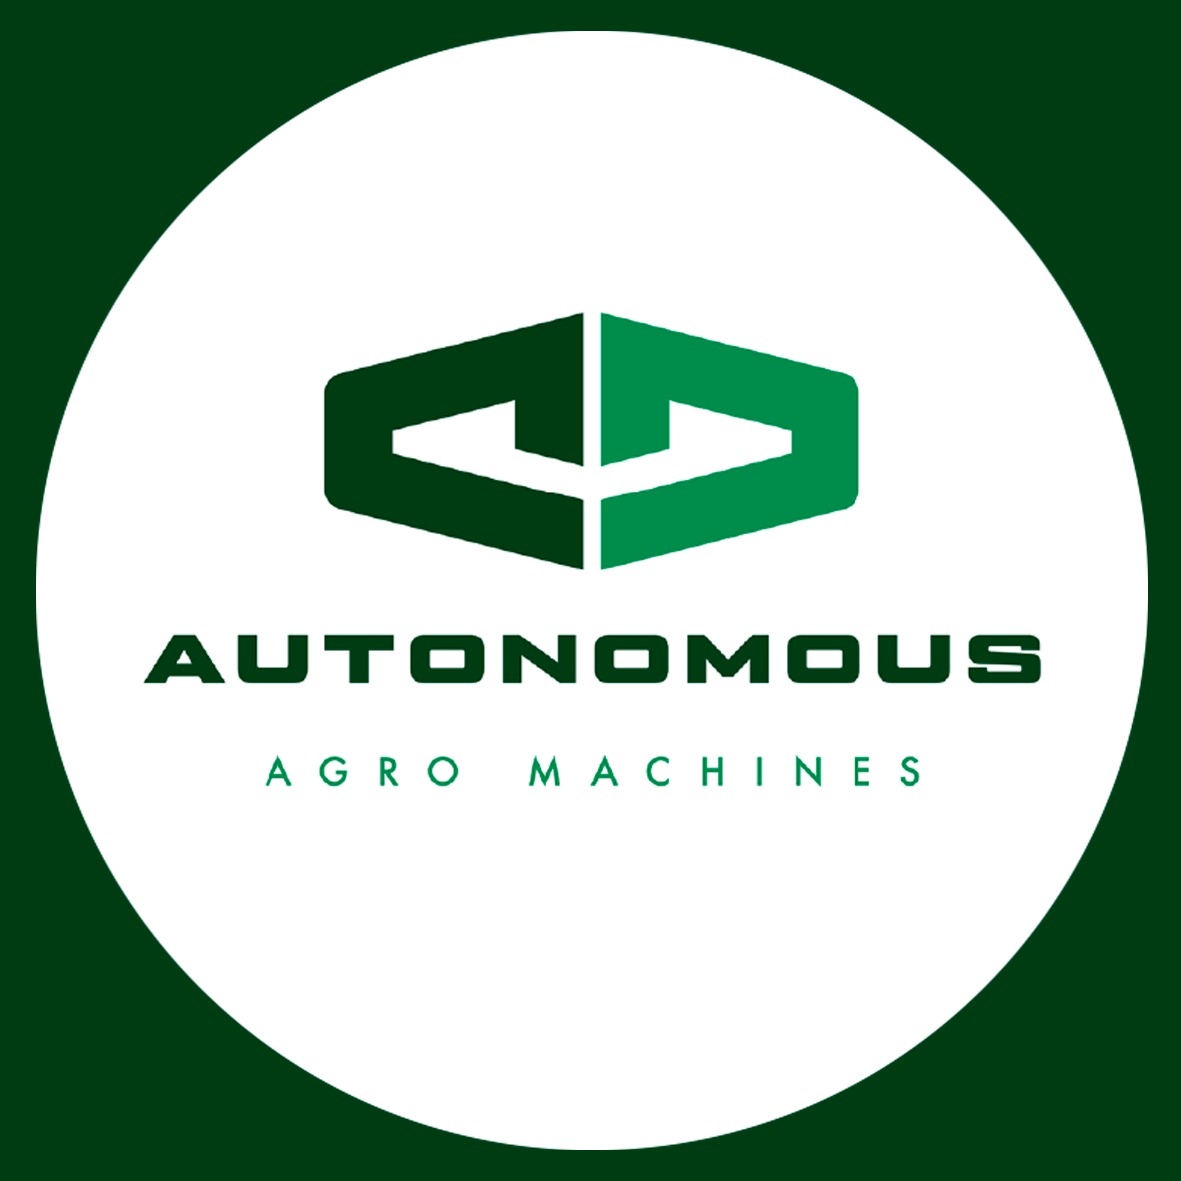 Foundation of Autonomous Agro Machines S/A